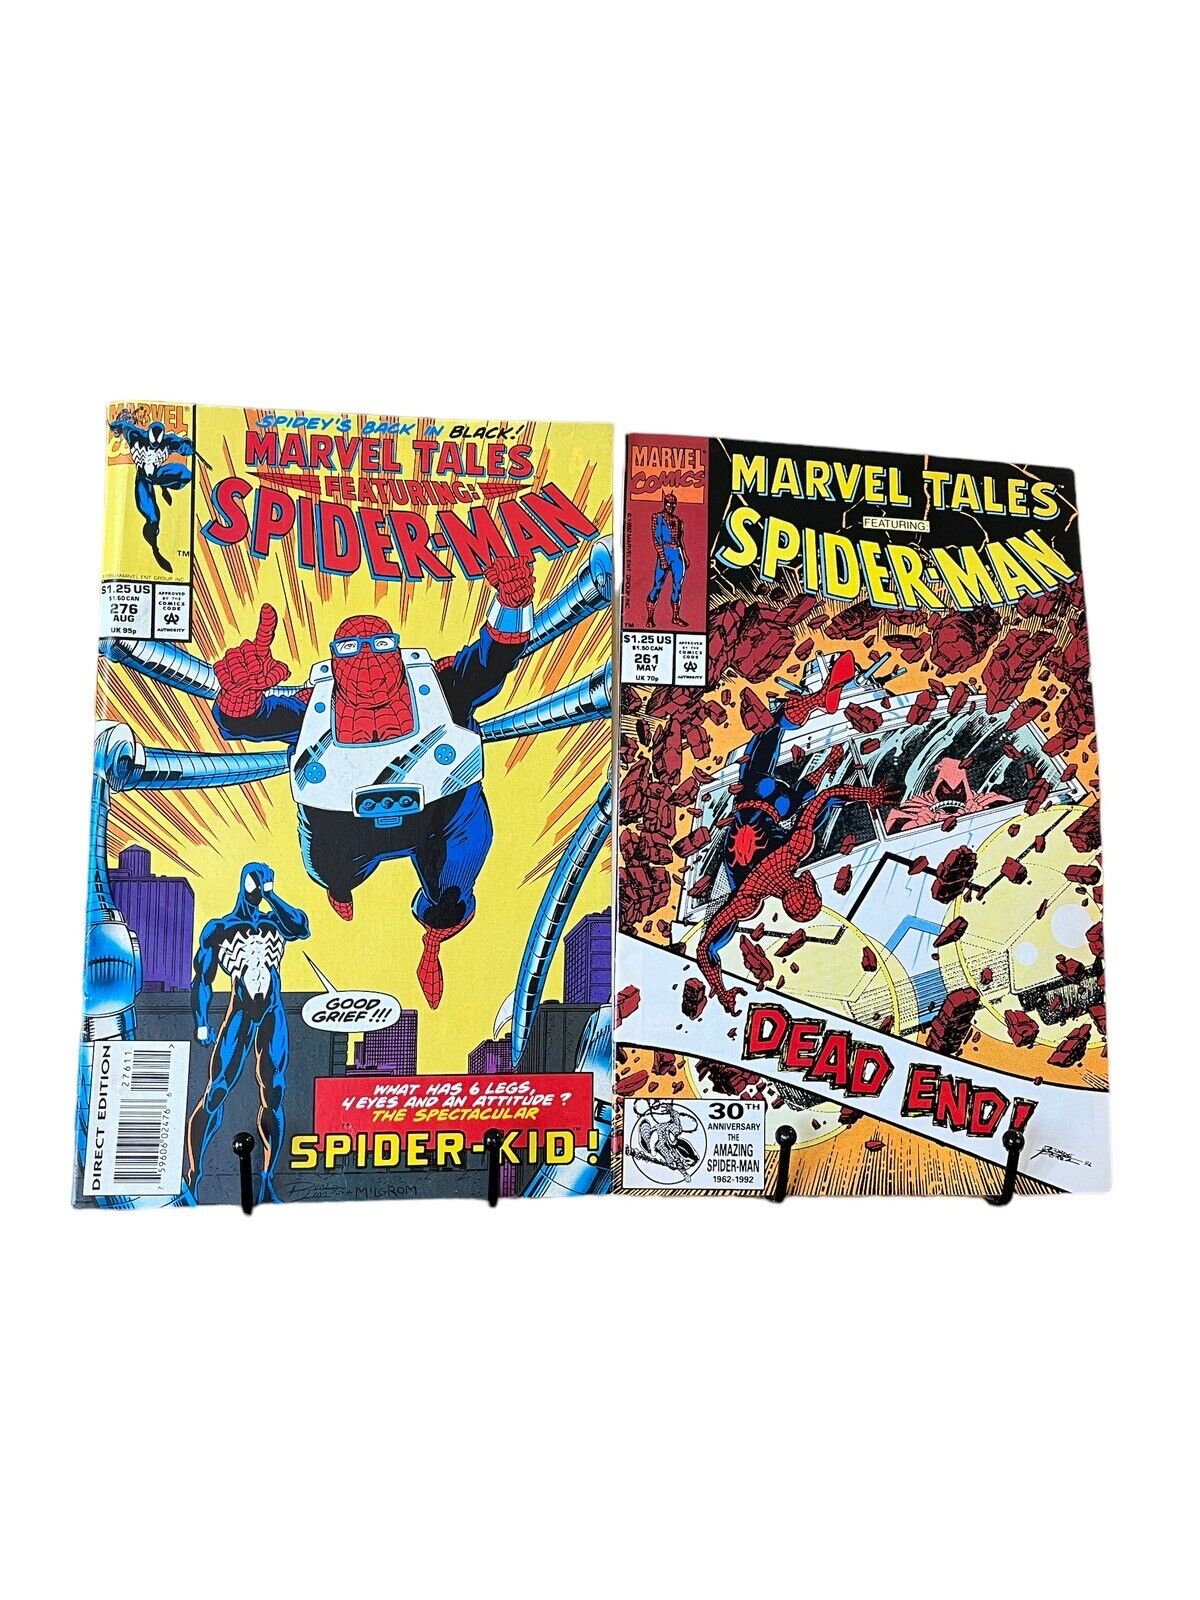 Marvel Vintage Comic Books Spider-Man Tales 261 276 1992 Spider-Kid Venom MCU